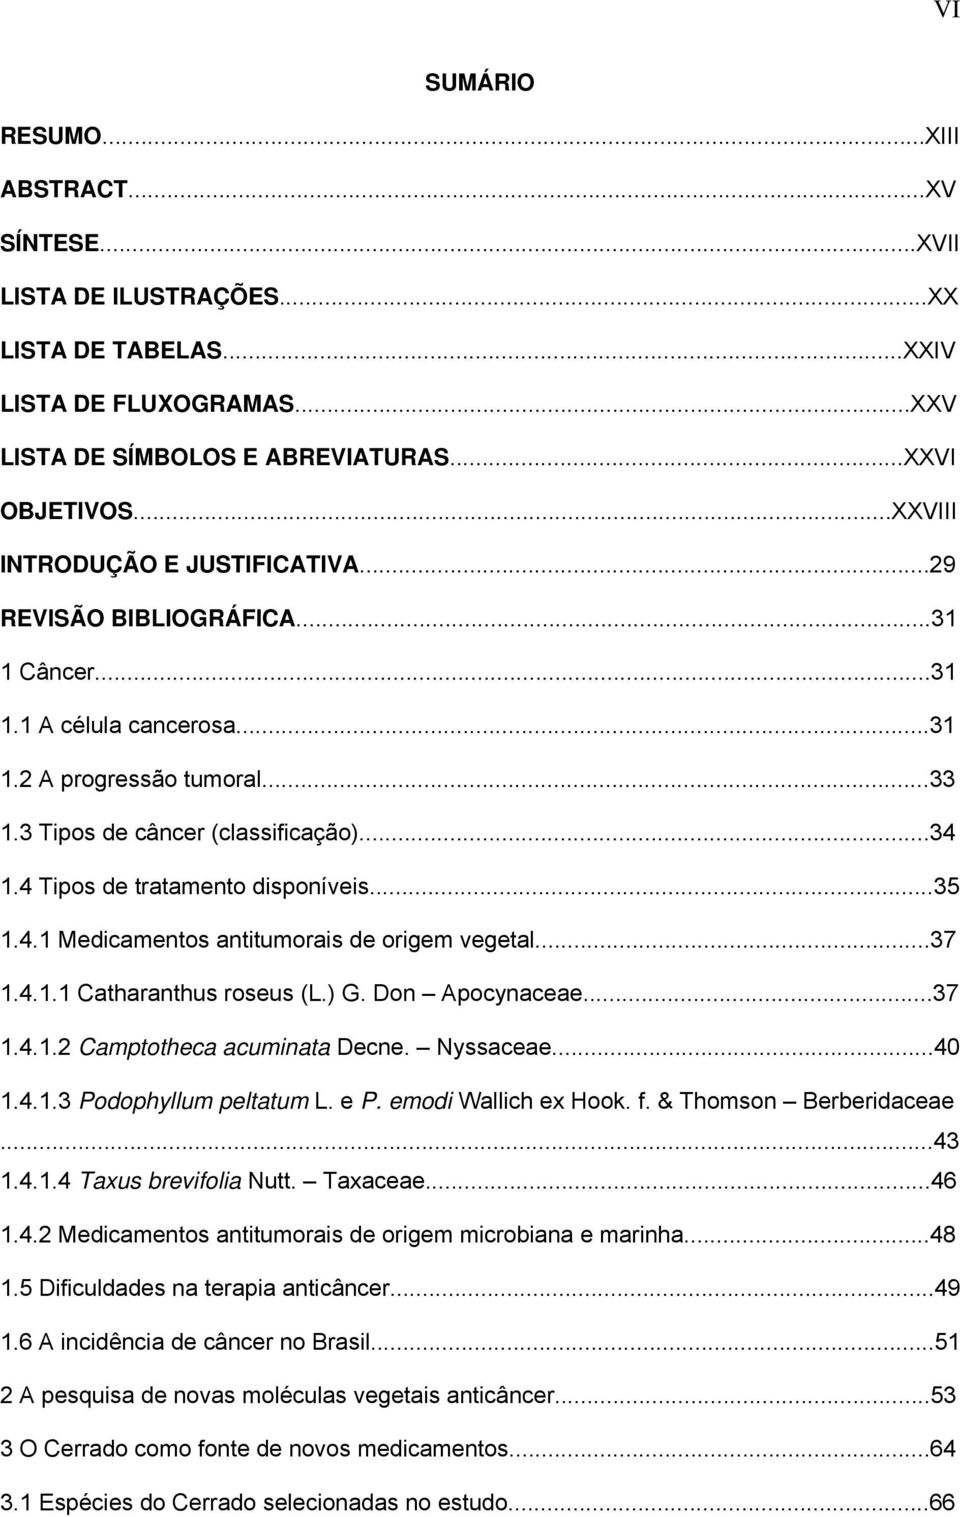 4 Tipos de tratamento disponíveis...35 1.4.1 Medicamentos antitumorais de origem vegetal...37 1.4.1.1 Catharanthus roseus (L.) G. Don Apocynaceae...37 1.4.1.2 Camptotheca acuminata Decne. Nyssaceae.